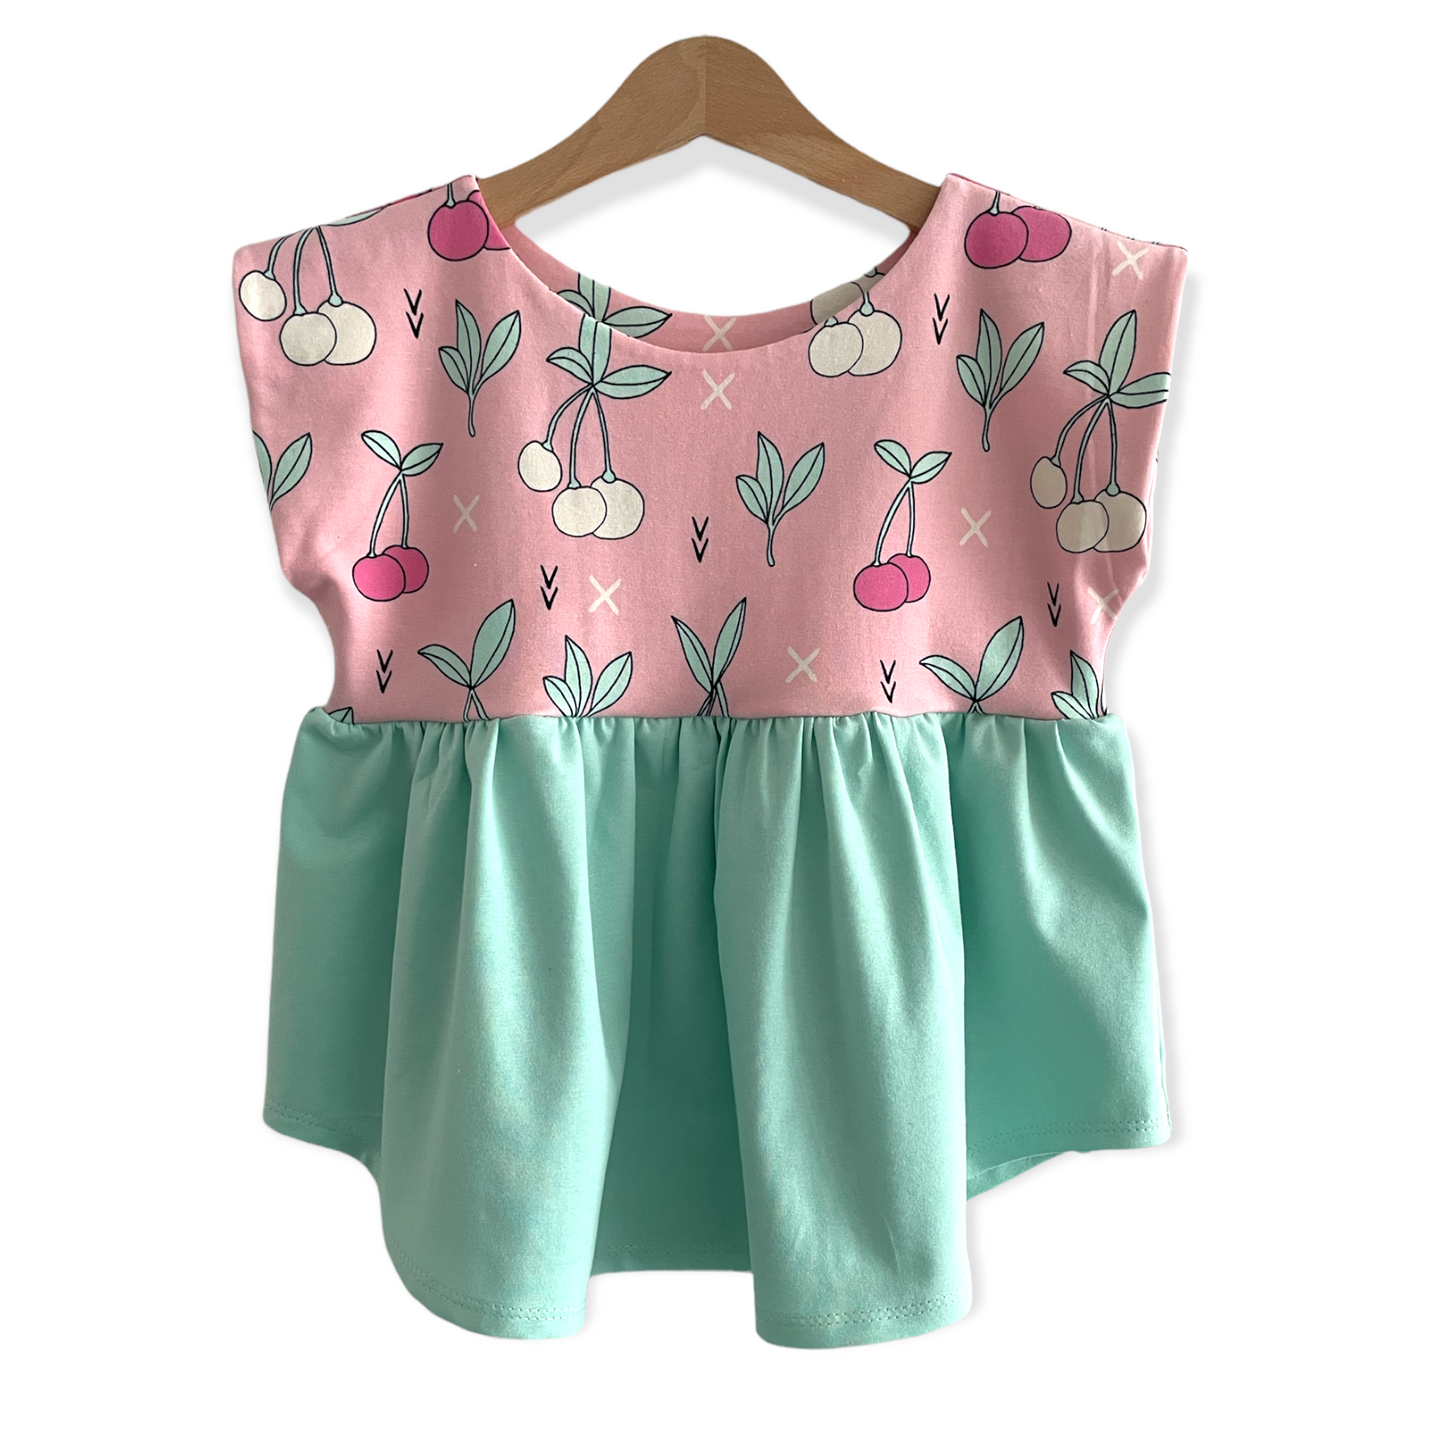 Flora Top/Tunic/Dress